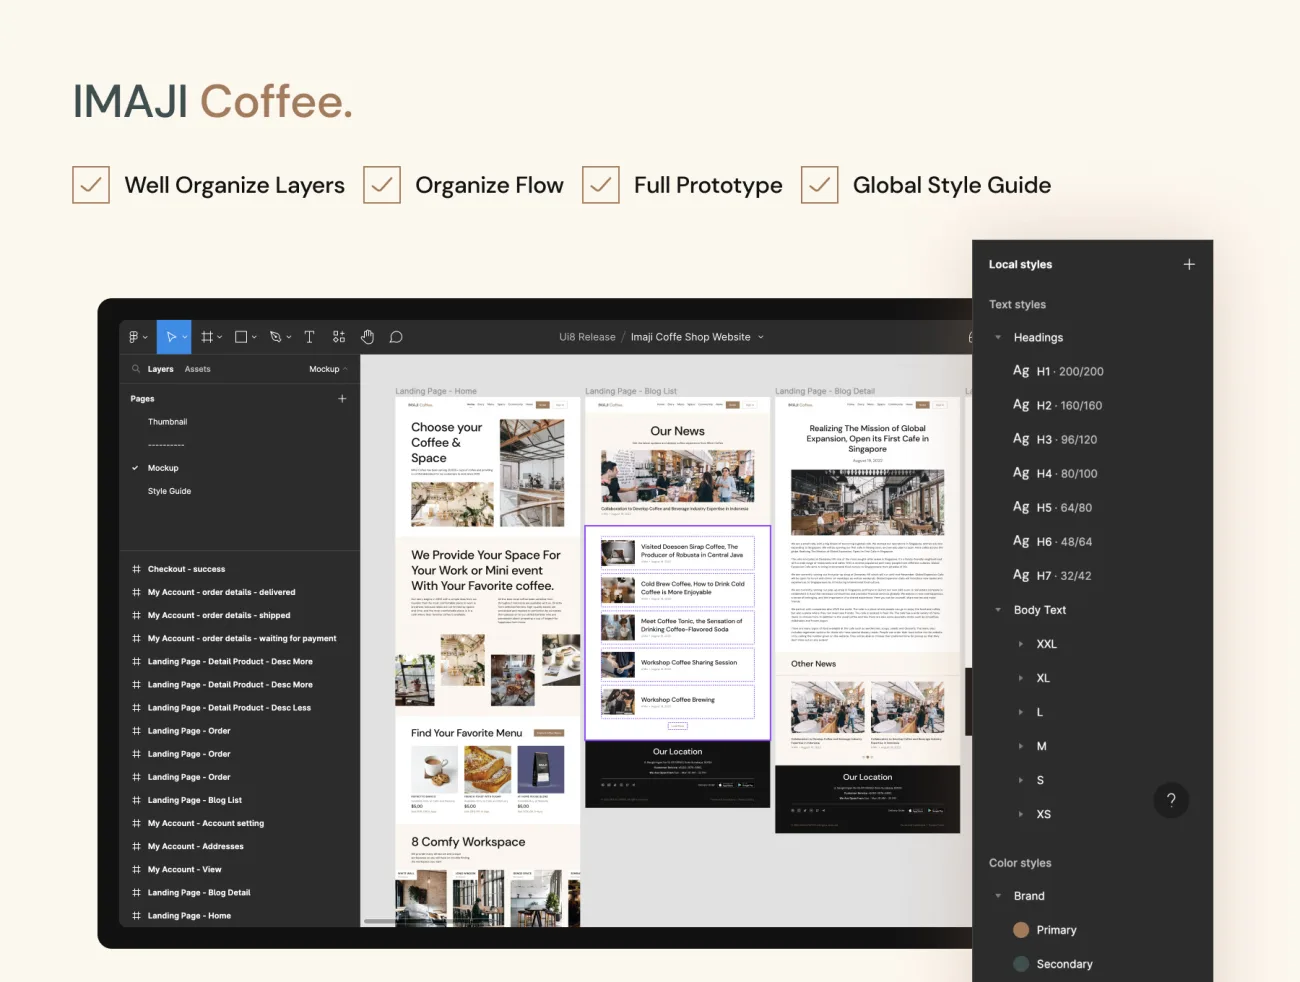 咖啡应用网站平台UI设计套件 Imaji Coffee Website - Coffee Shop and Online Shop UI Kit figma格式-UI/UX、ui套件、博客、卡片式、地图、支付、注册、登录页、网站、聊天、表单-到位啦UI